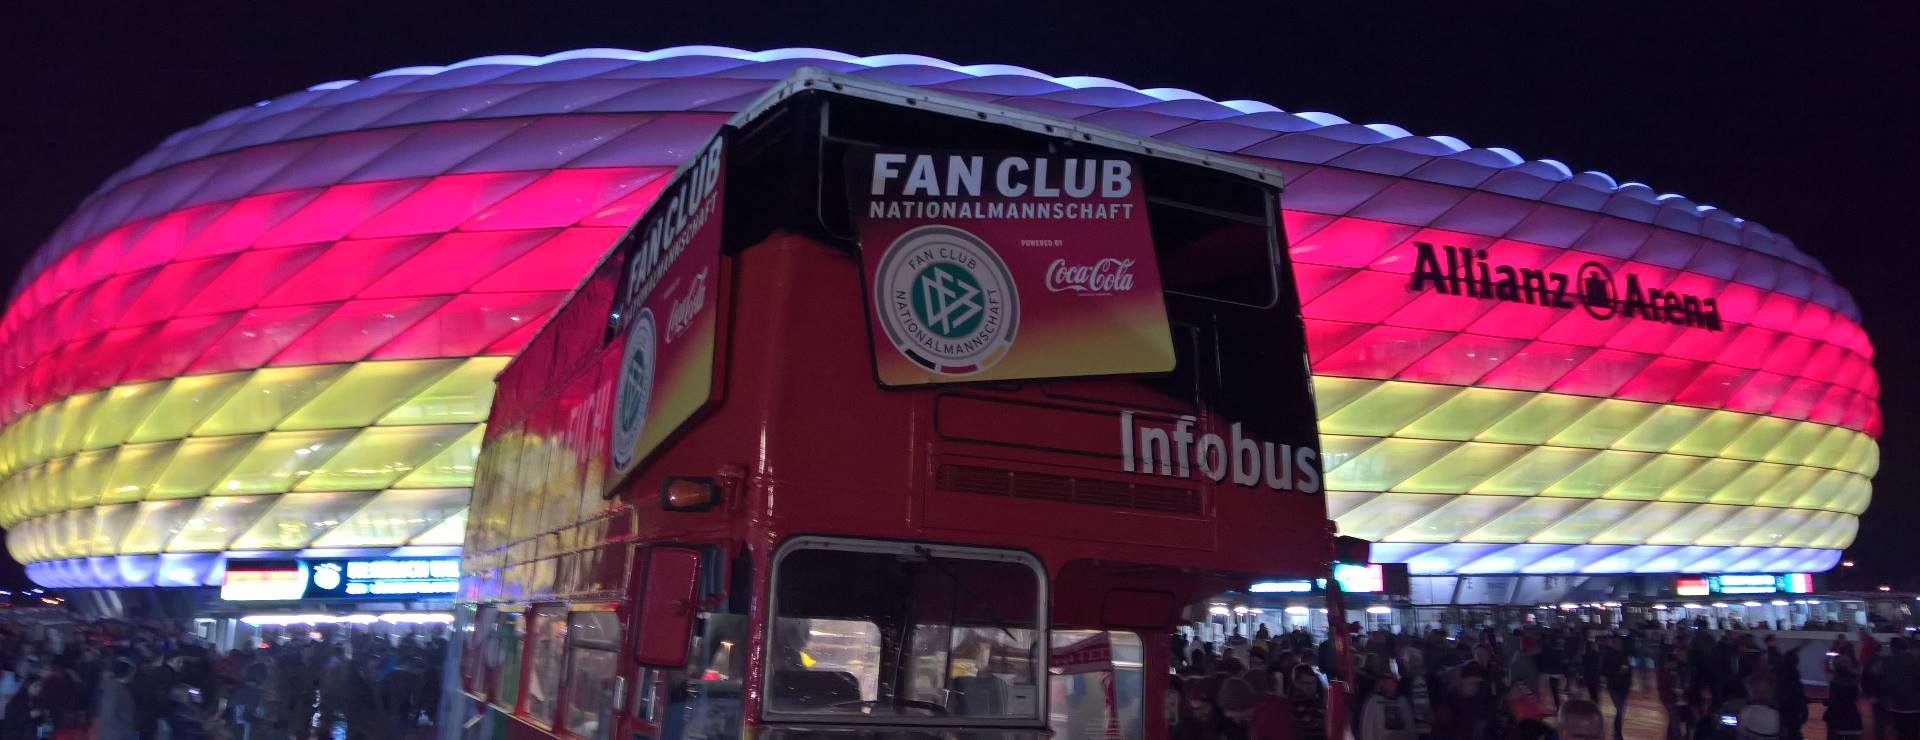 Der Fan Club-Bus vor der Allianz Arena, die in München in schwarz rot gold erscheint.